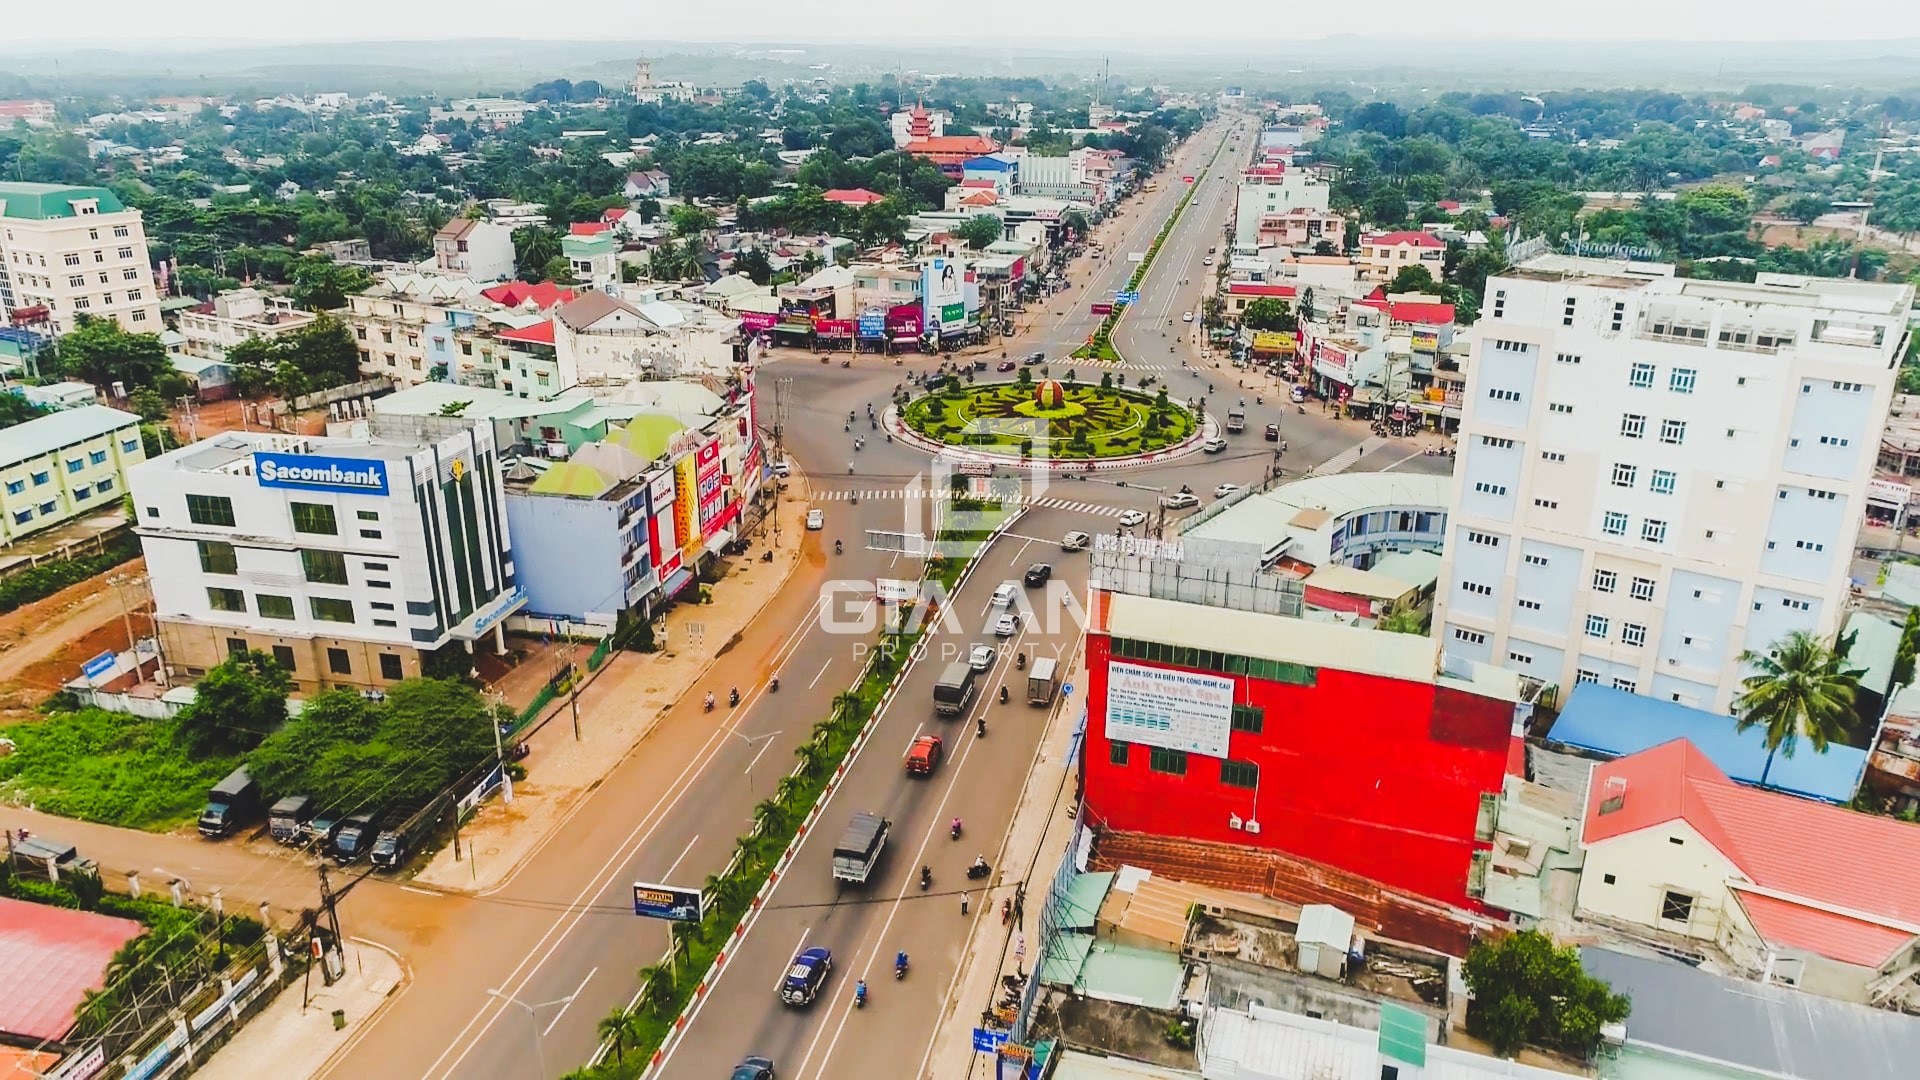 Tỉnh Bình Phước thuộc miền Đông Nam Bộ, Việt Nam